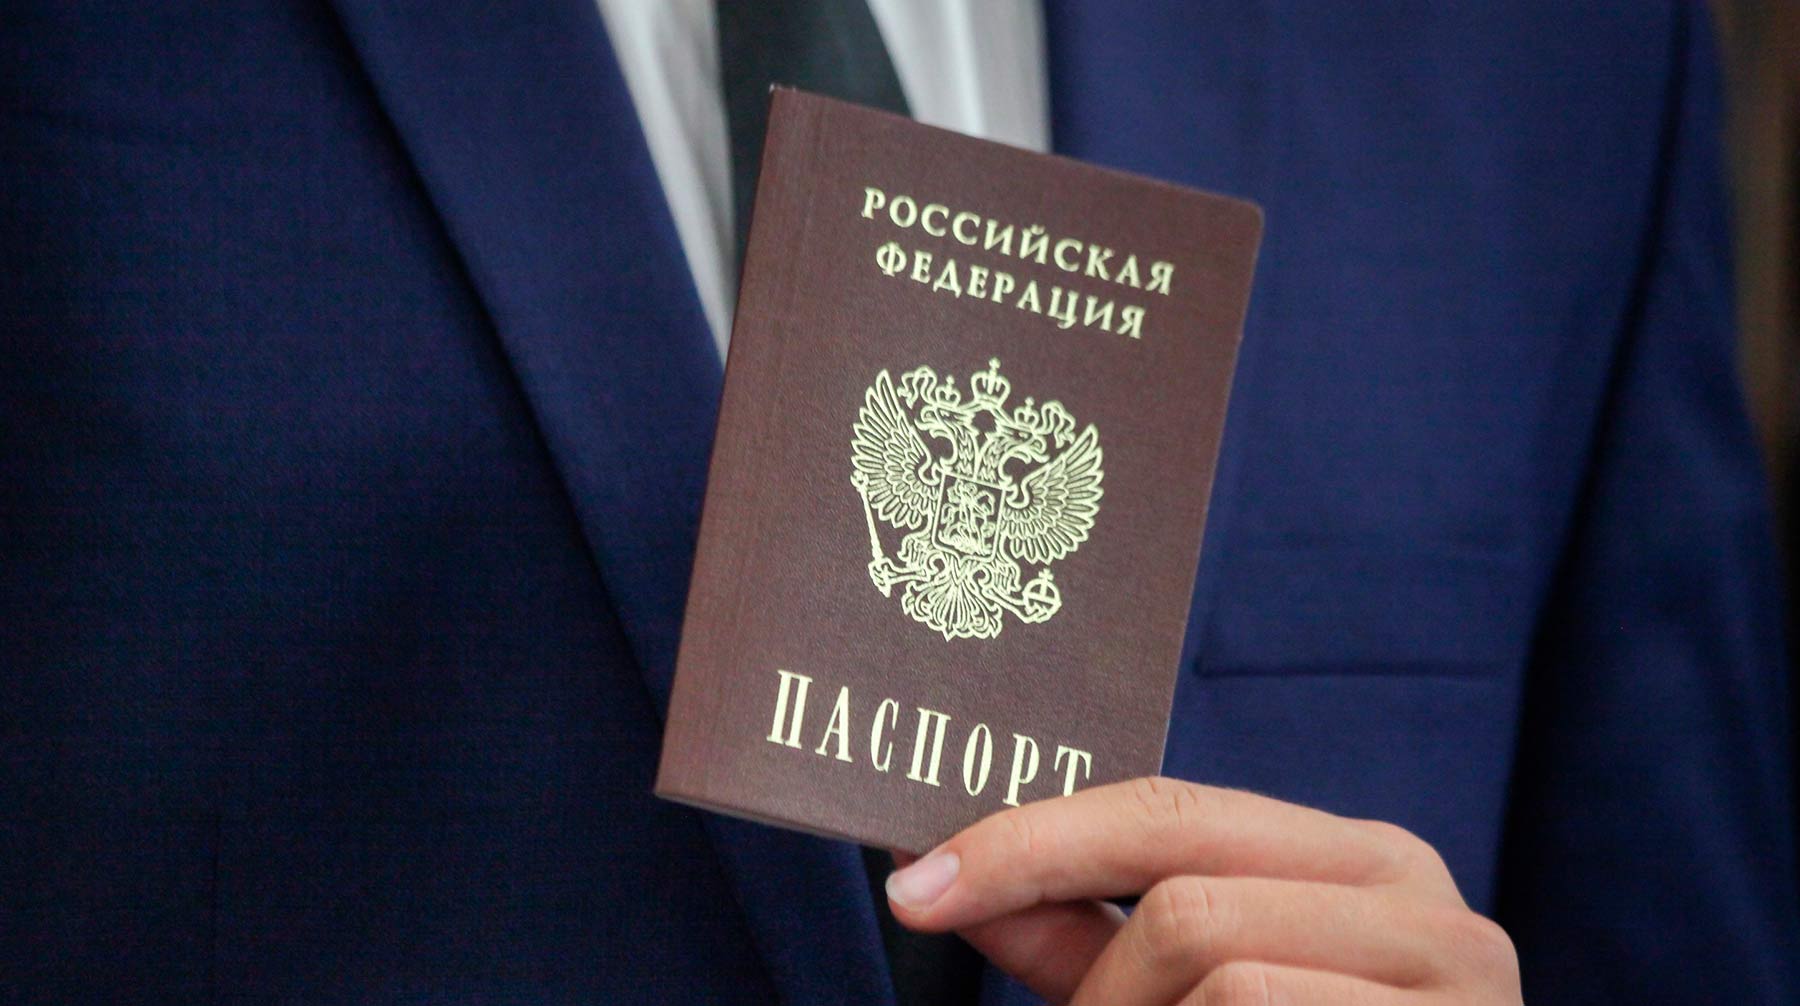 Решением вопроса может стать президентский указ, как ранее случилось с Донбассом Фото: © АГН Москва / Сергей Ведяшкин